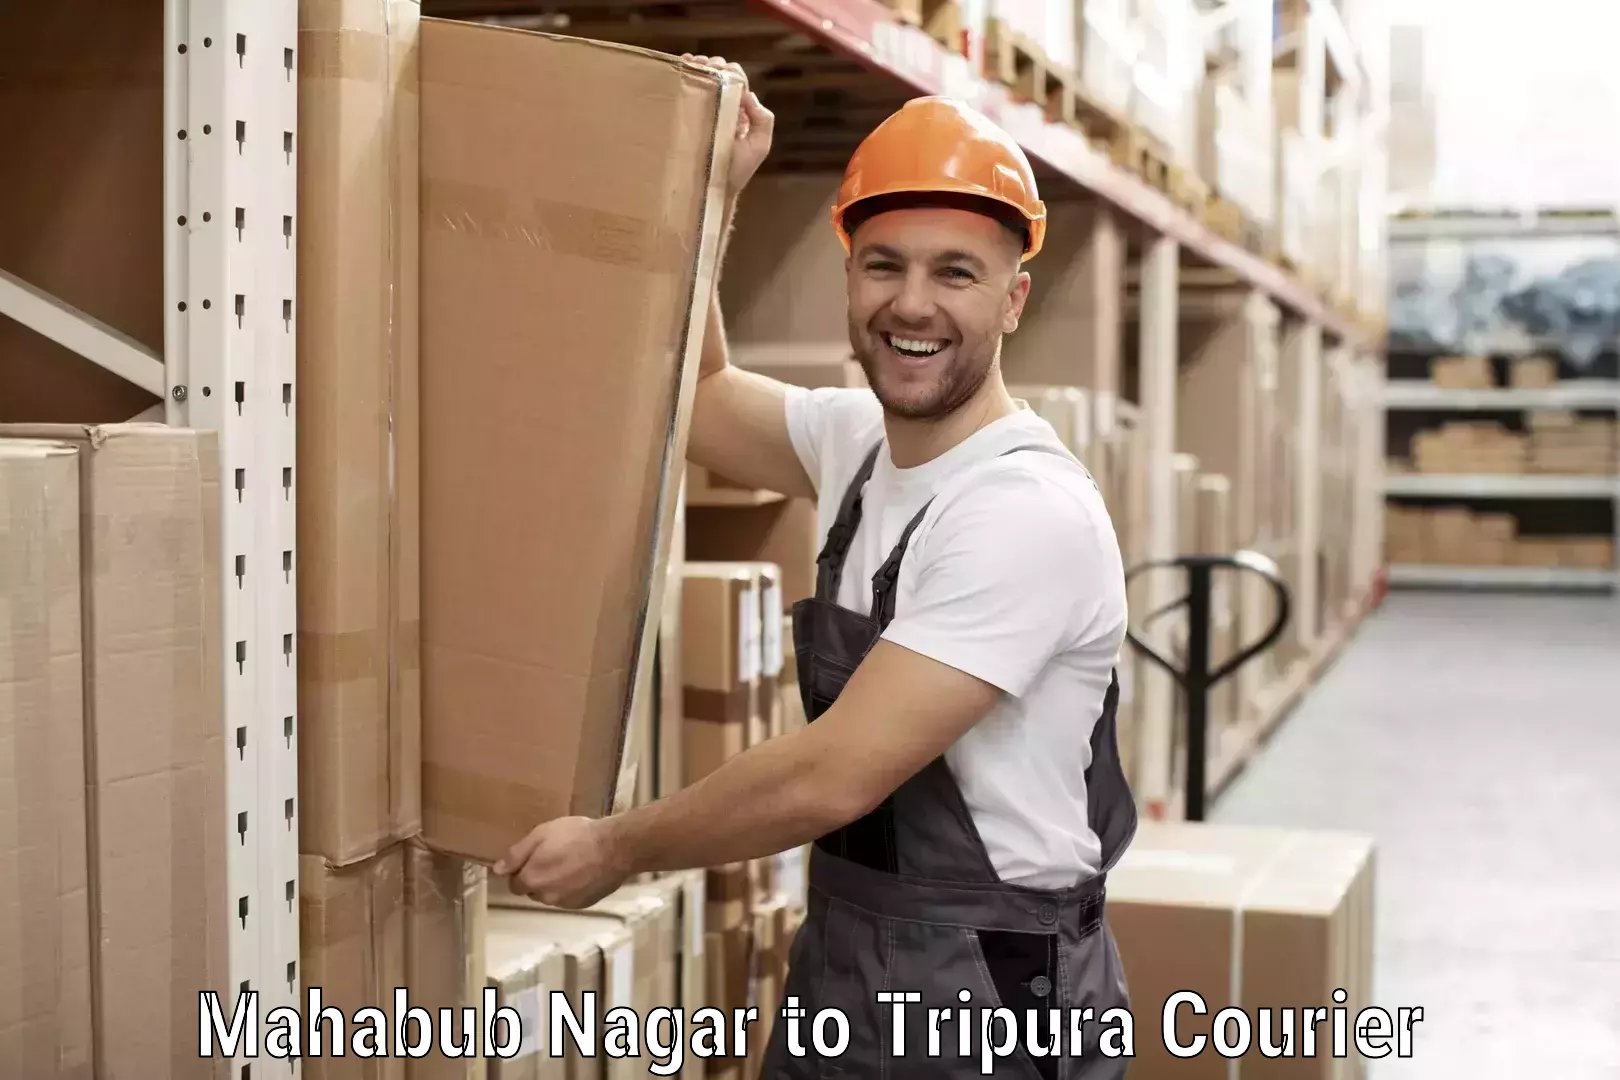 Smart logistics solutions Mahabub Nagar to Udaipur Tripura